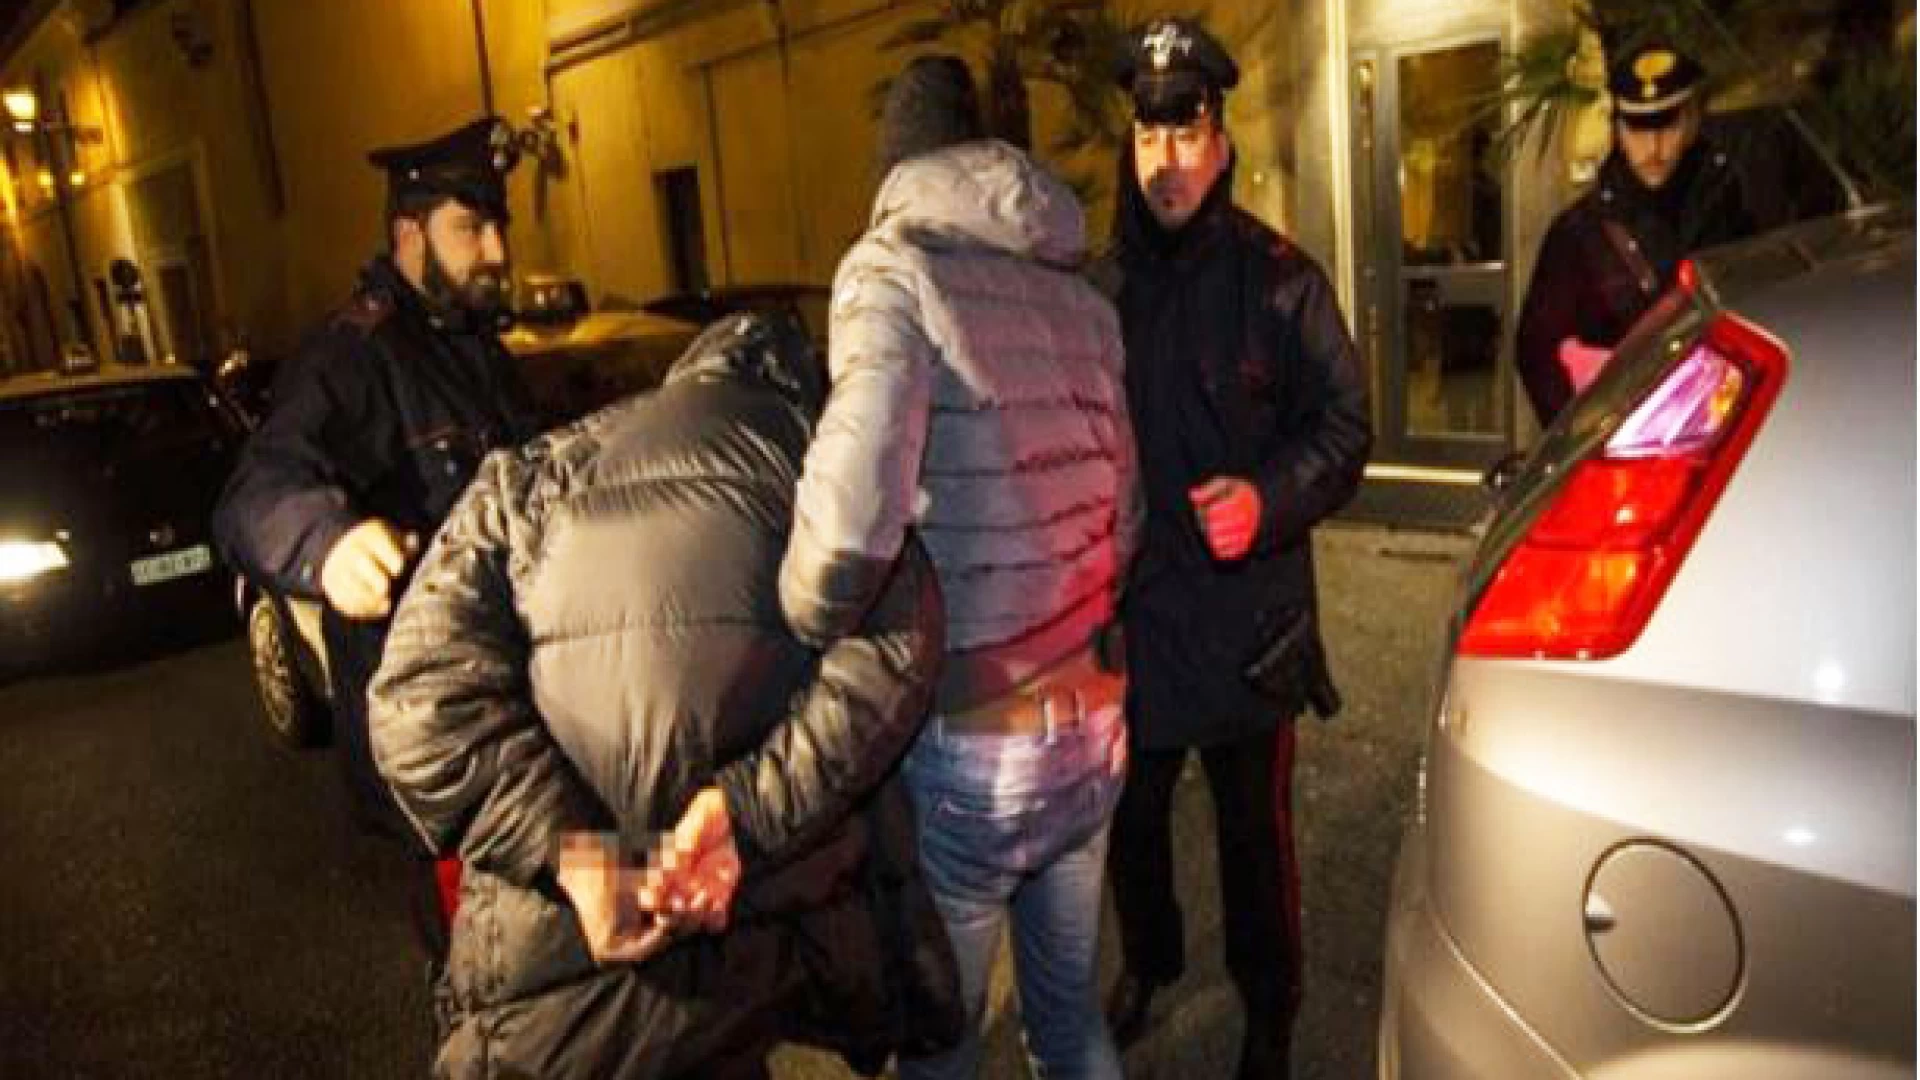 Venafro: Furto e spaccio di stupefacenti, pregiudicato del posto arrestato dai Carabinieri.